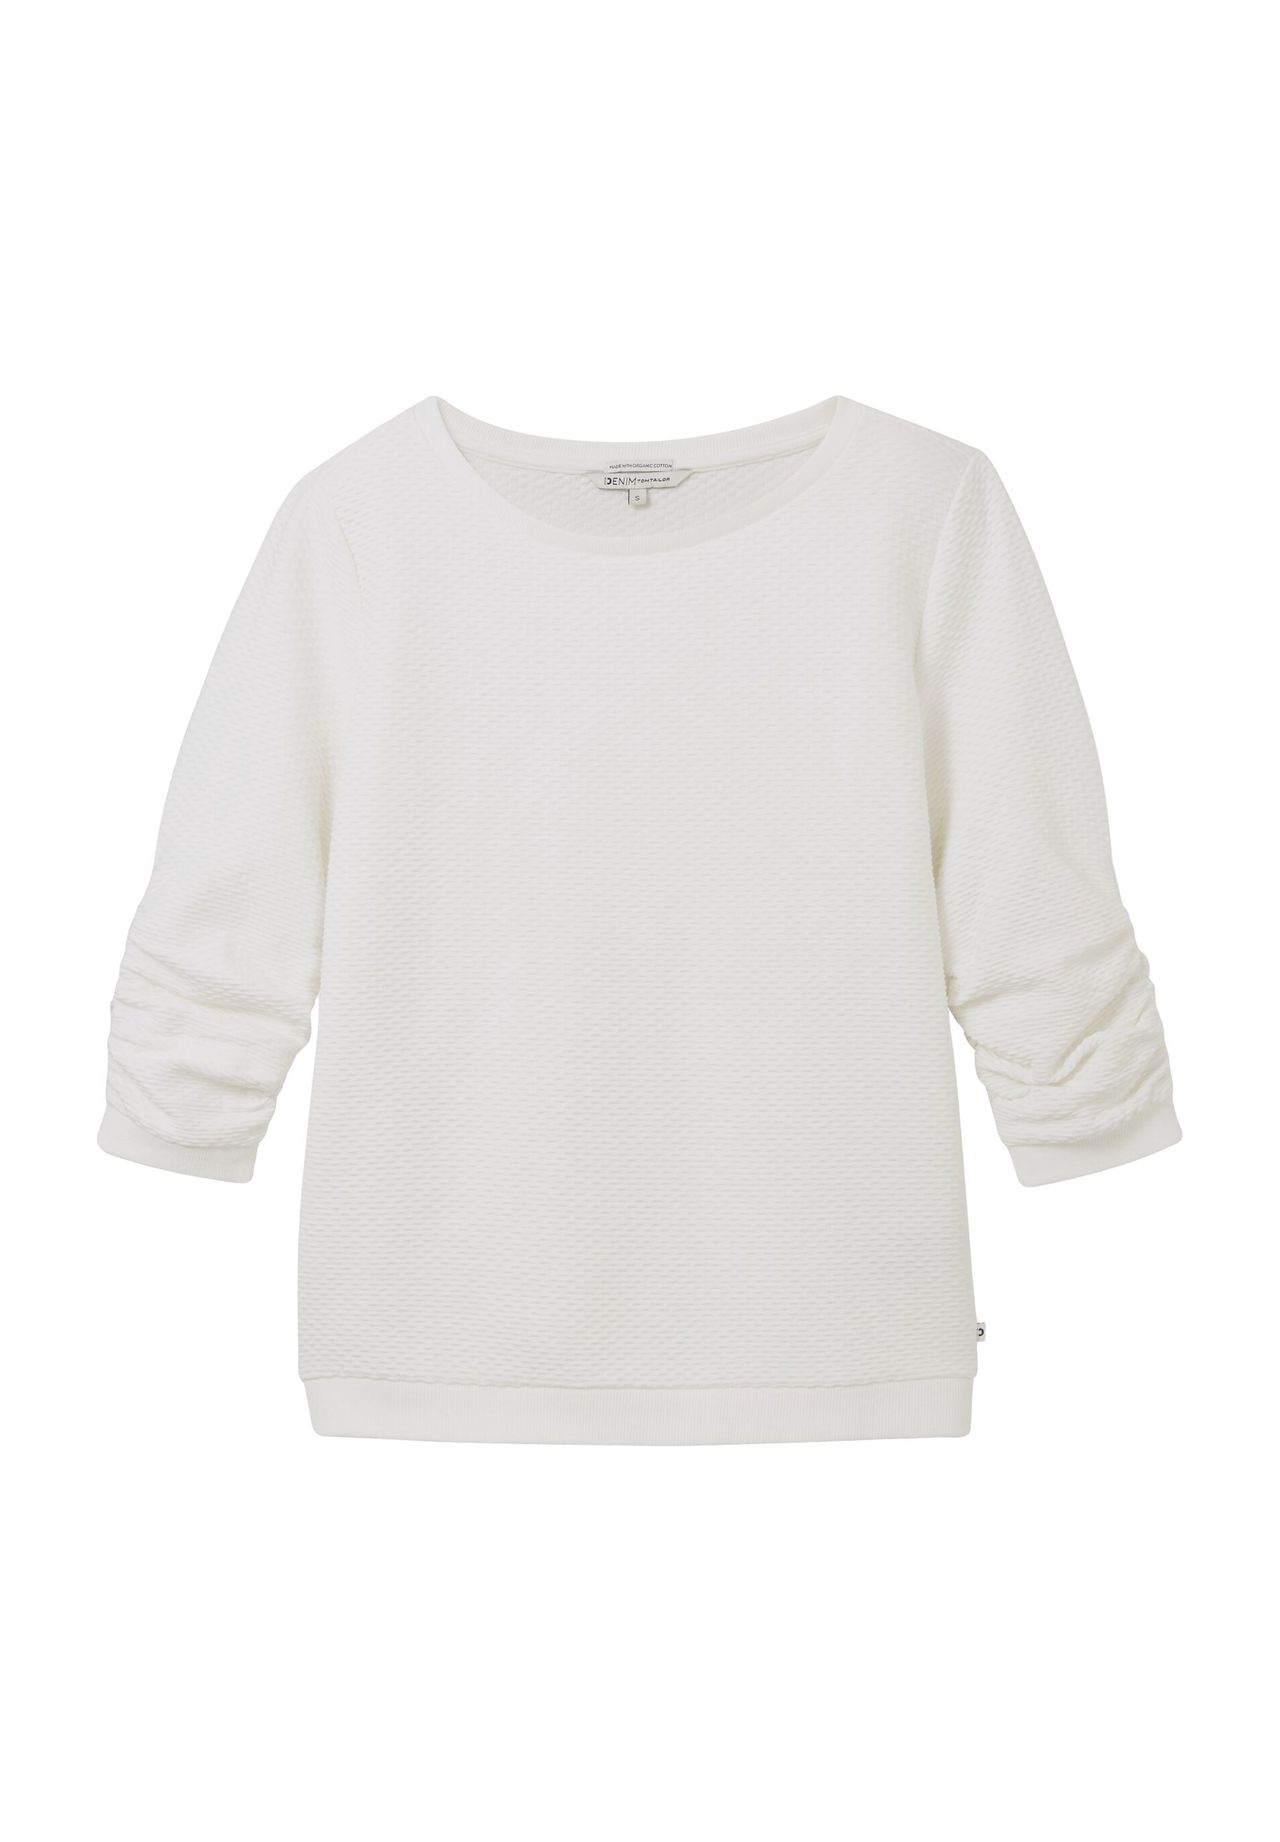 Denim tom tailor white pullover kaufen | GALERIA